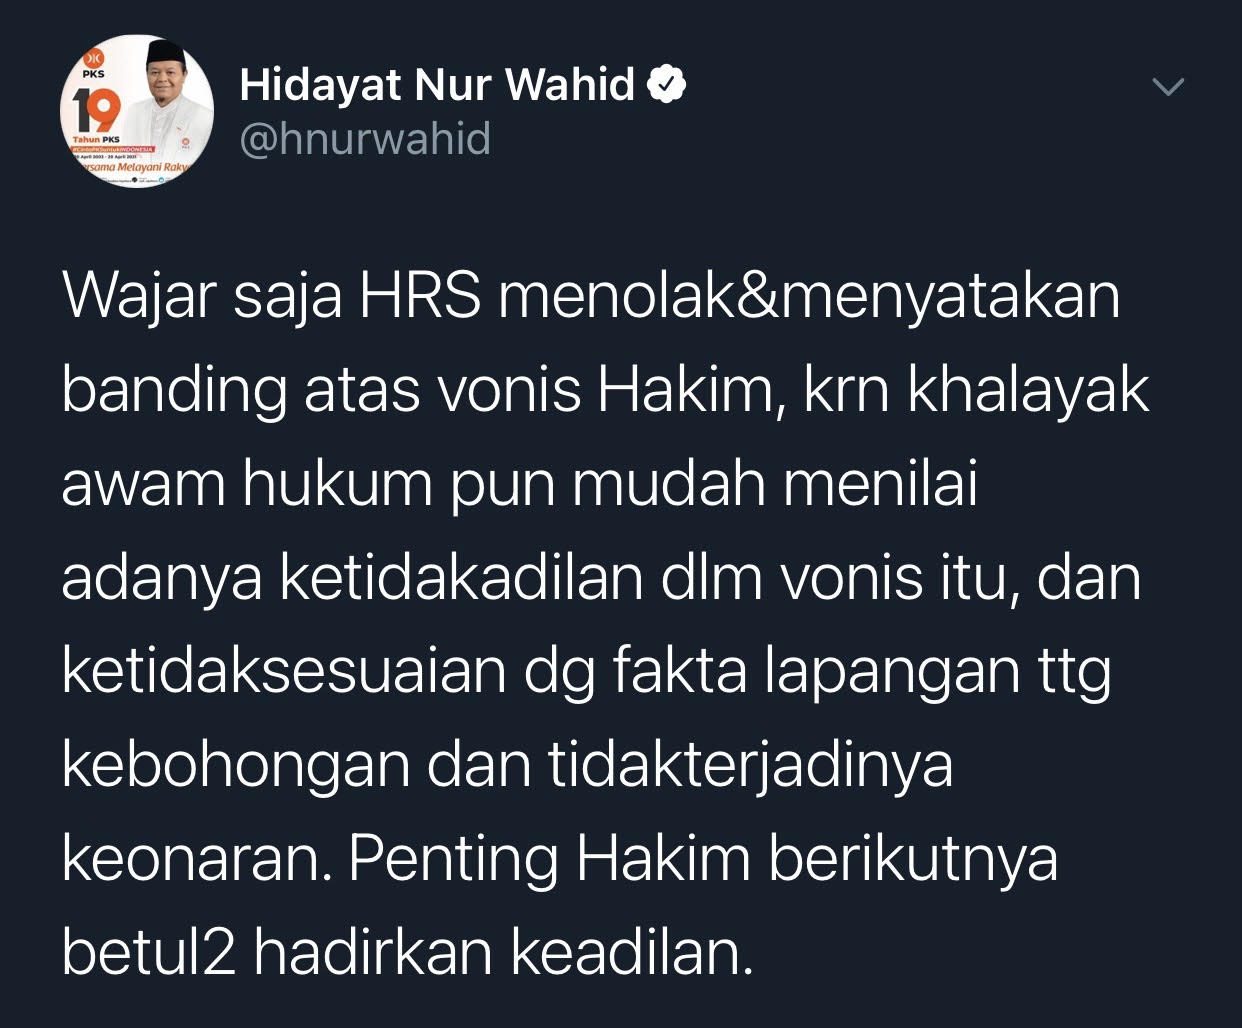 Hidayat Nur Wahid menilai wajar Habib Rizieq menolak dan akan banding atas vonis hakim dalam kasus tes usap di RS Ummi Bogor.